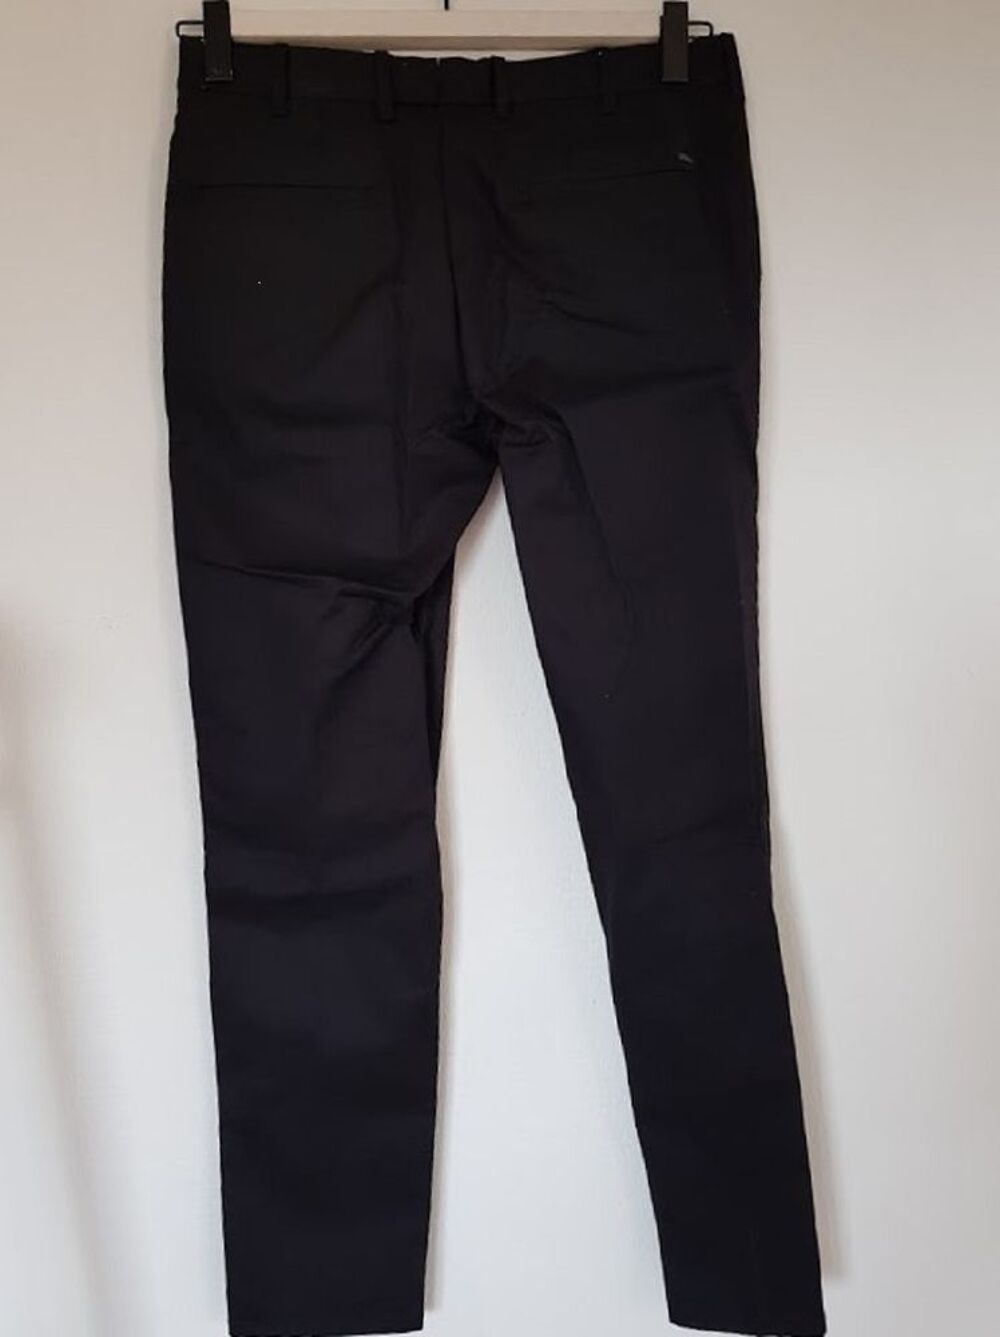 Pantalon noir slim fit, neuf, coton &eacute;cologique
Vtements